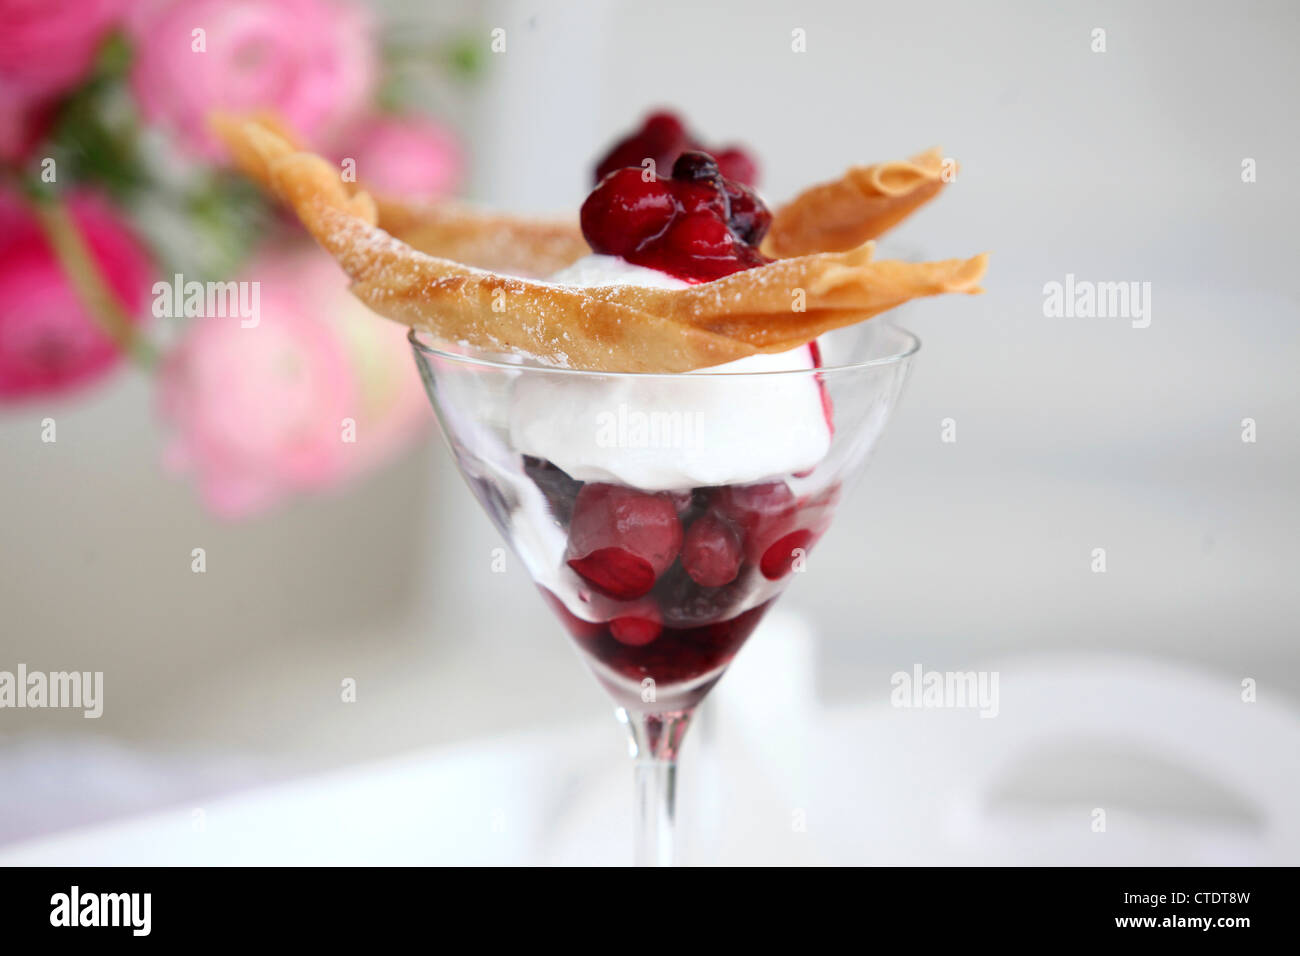 Cherries and ice cream dessert Stock Photo